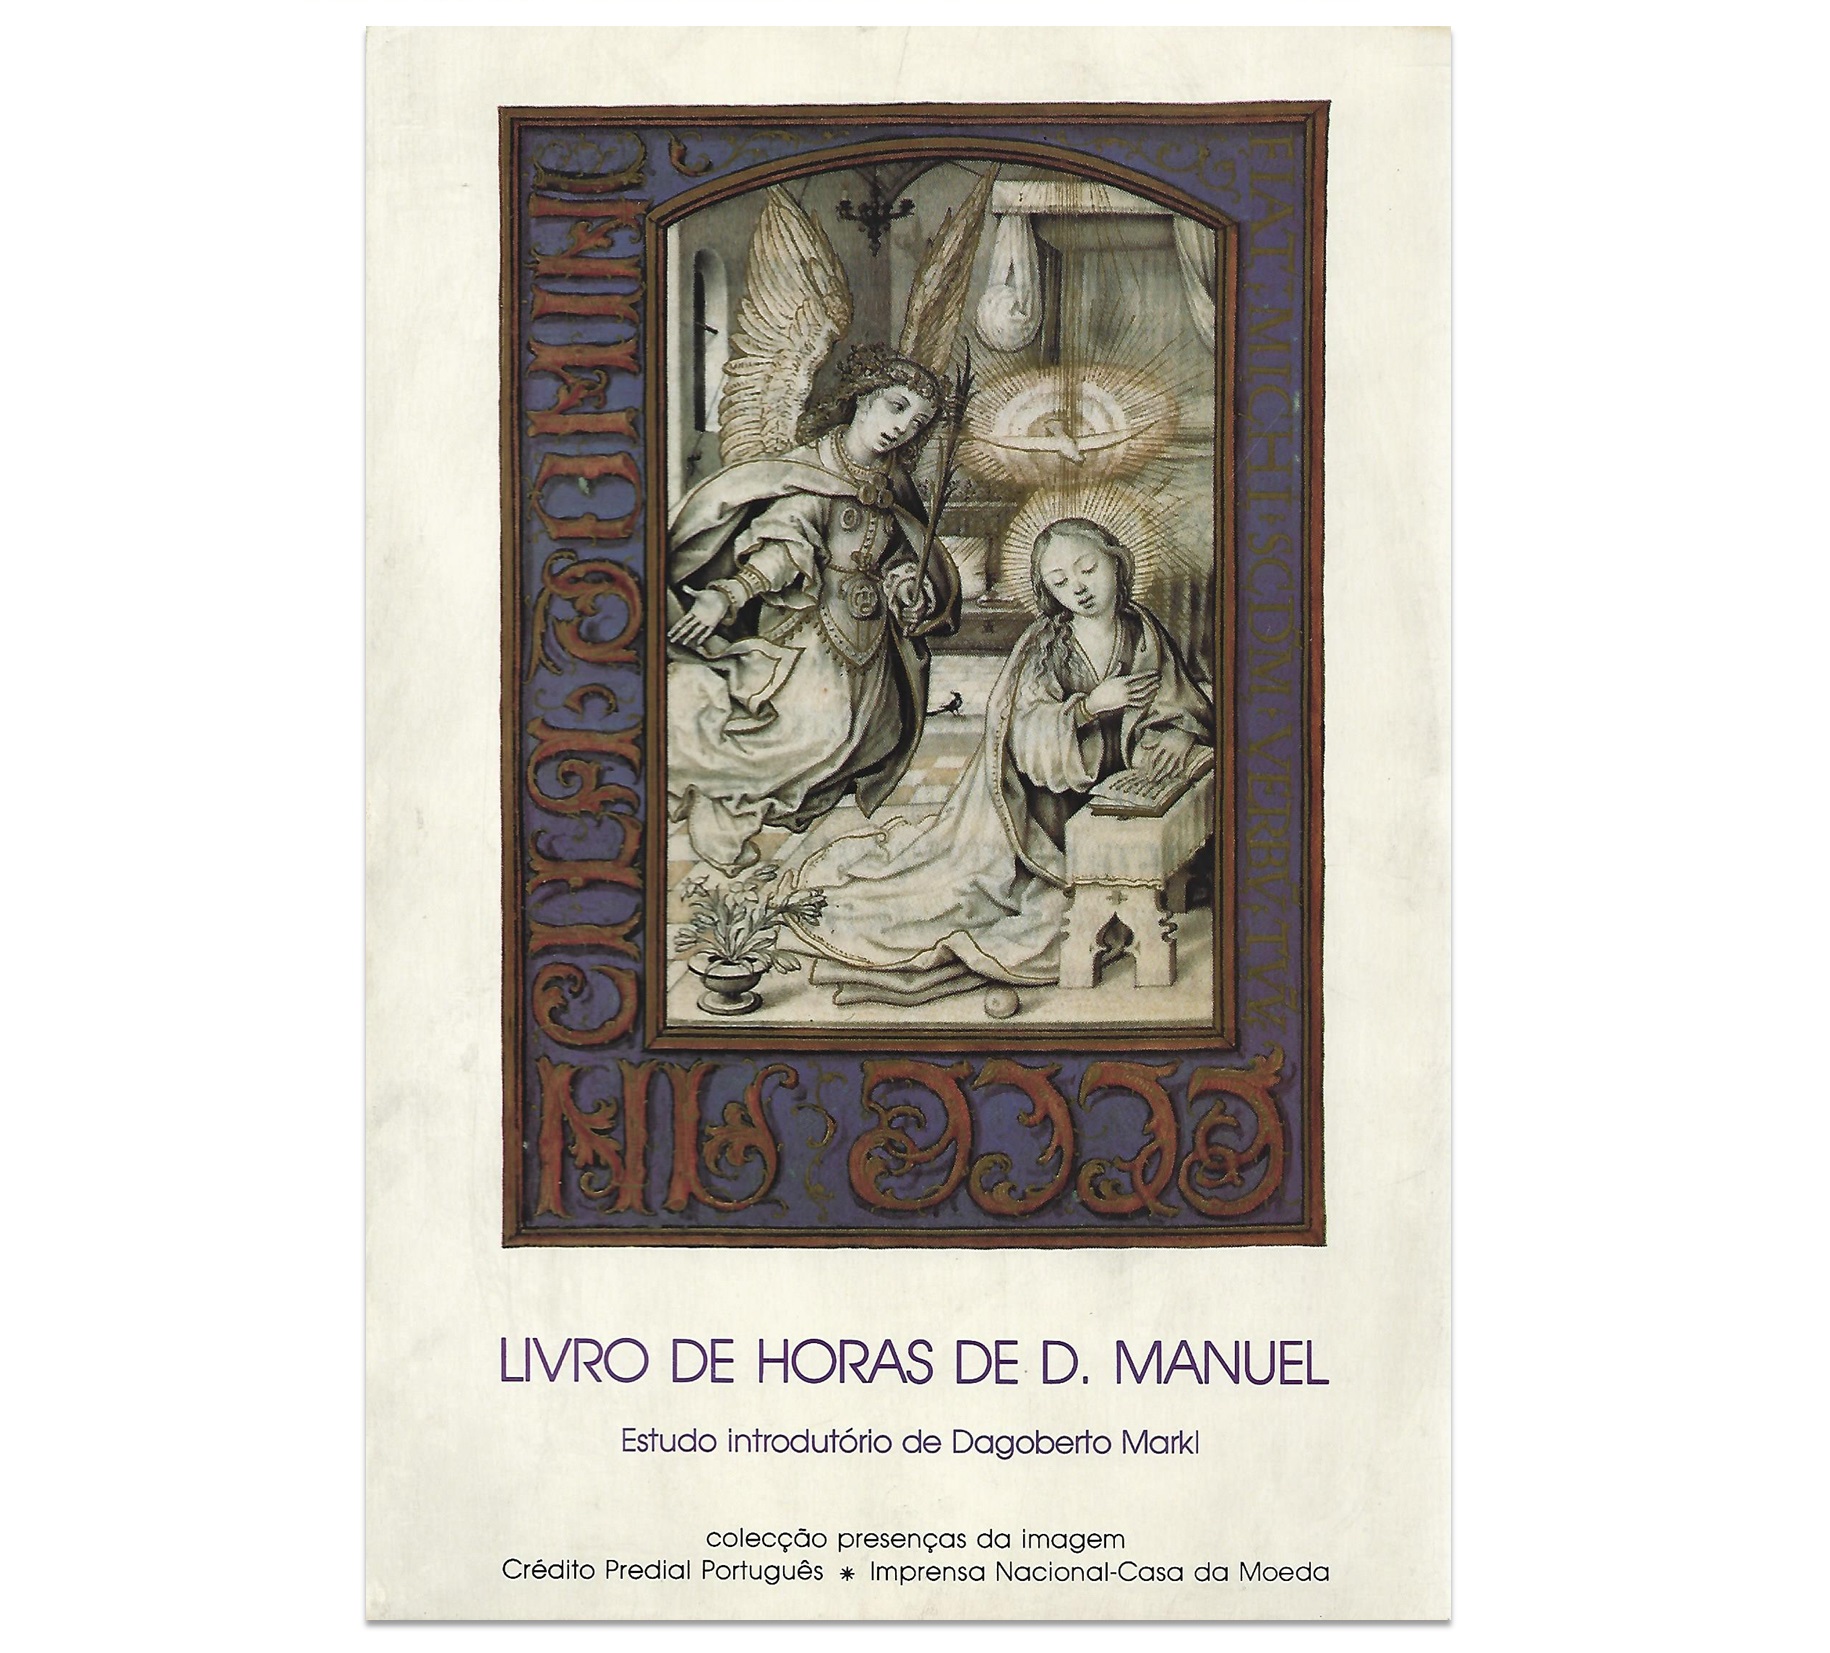 LIVRO DE HORAS DE D. MANUEL